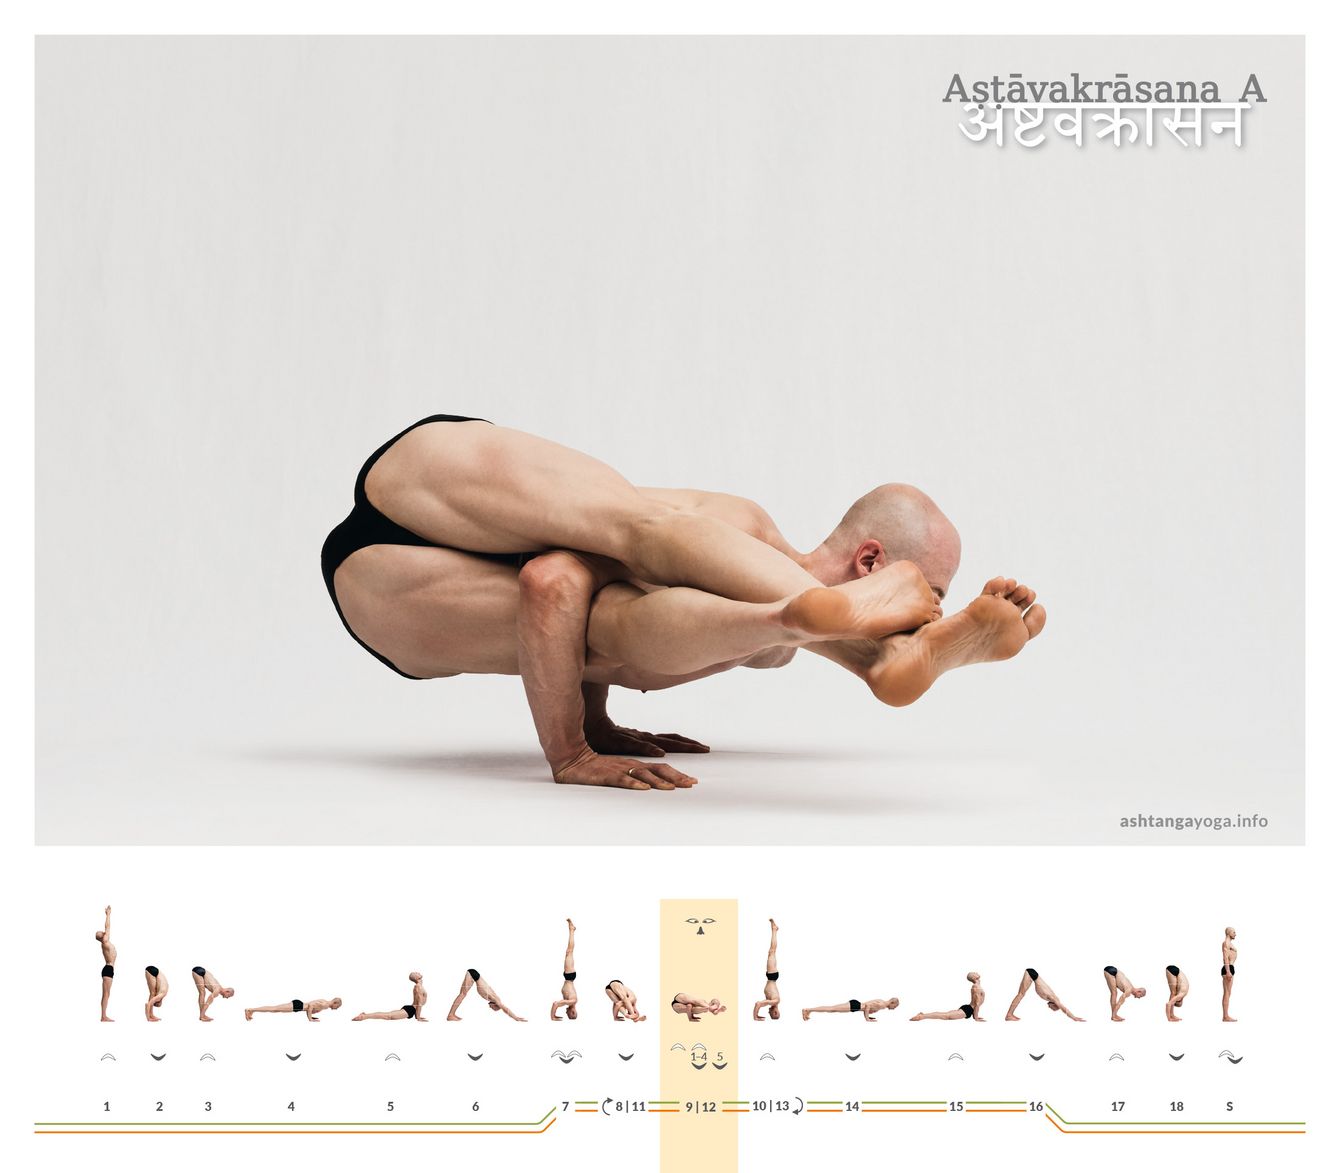 Ashtavakrasana A, oder dem Ashtavakra gewidmete Position, ist eine Armbalance mit zur Seite verschlungenen Beinen.